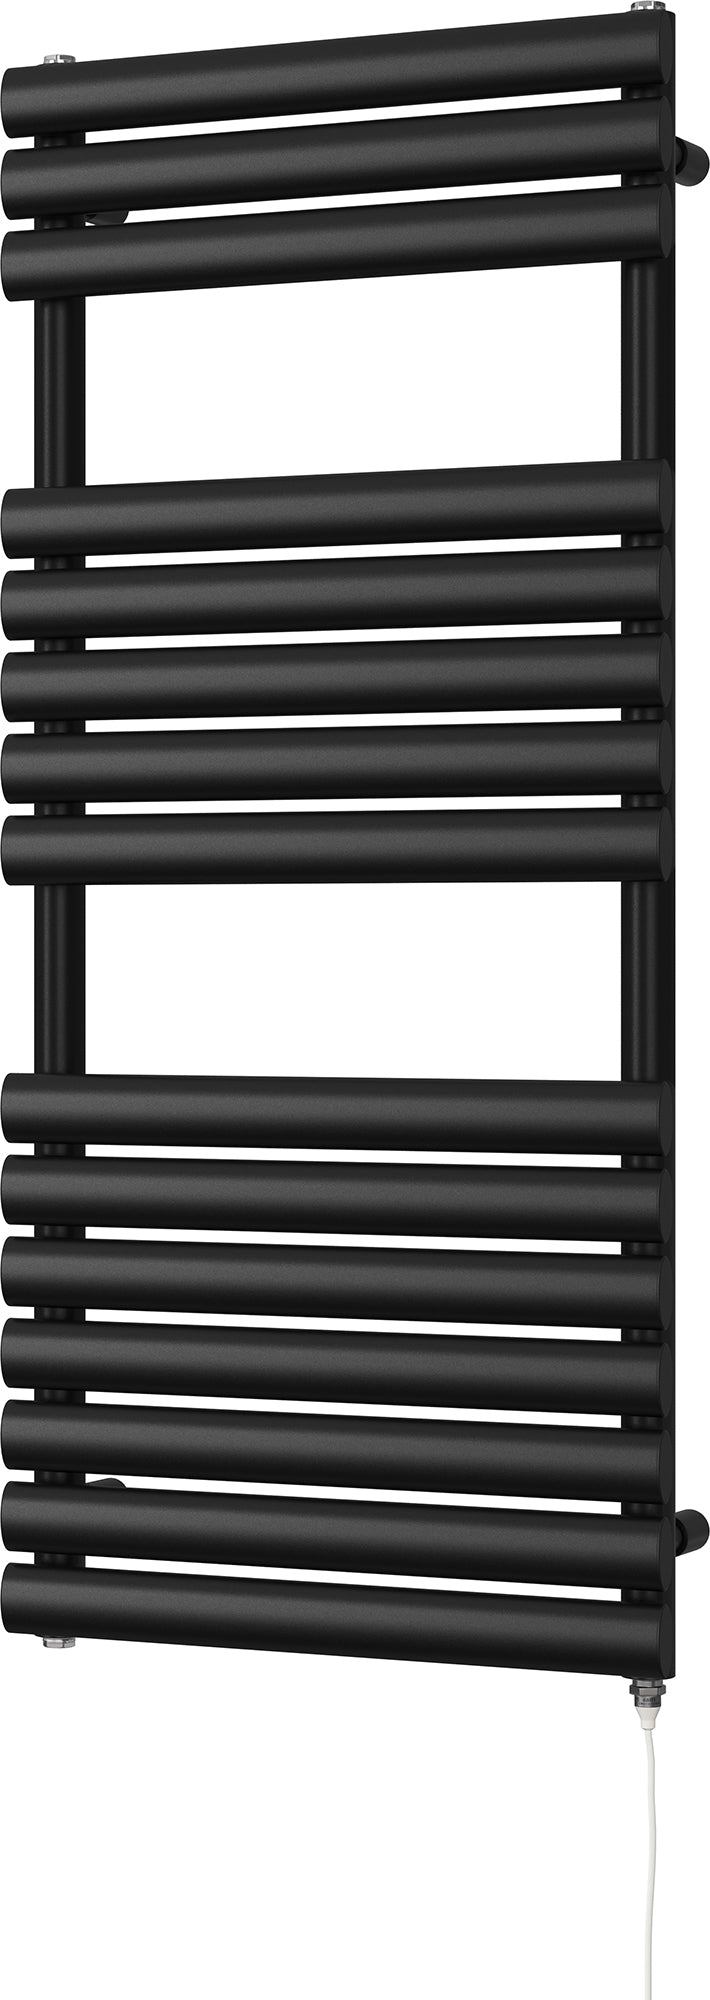 Omeara - Black Electric Towel Rail H1120mm x W500mm 400w Standard